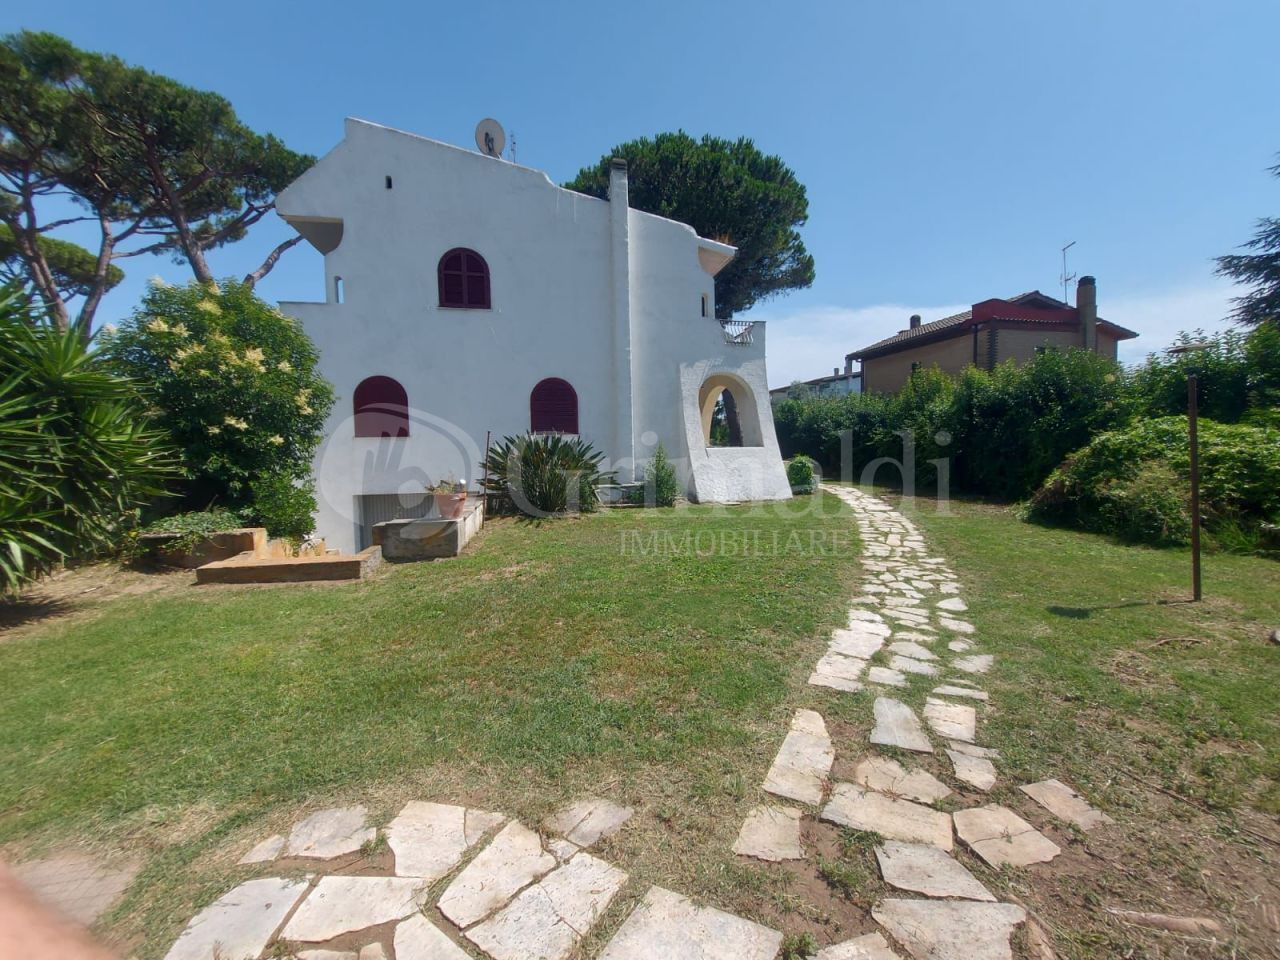 Villa in vendita a Ardea, 7 locali, prezzo € 365.000 | PortaleAgenzieImmobiliari.it